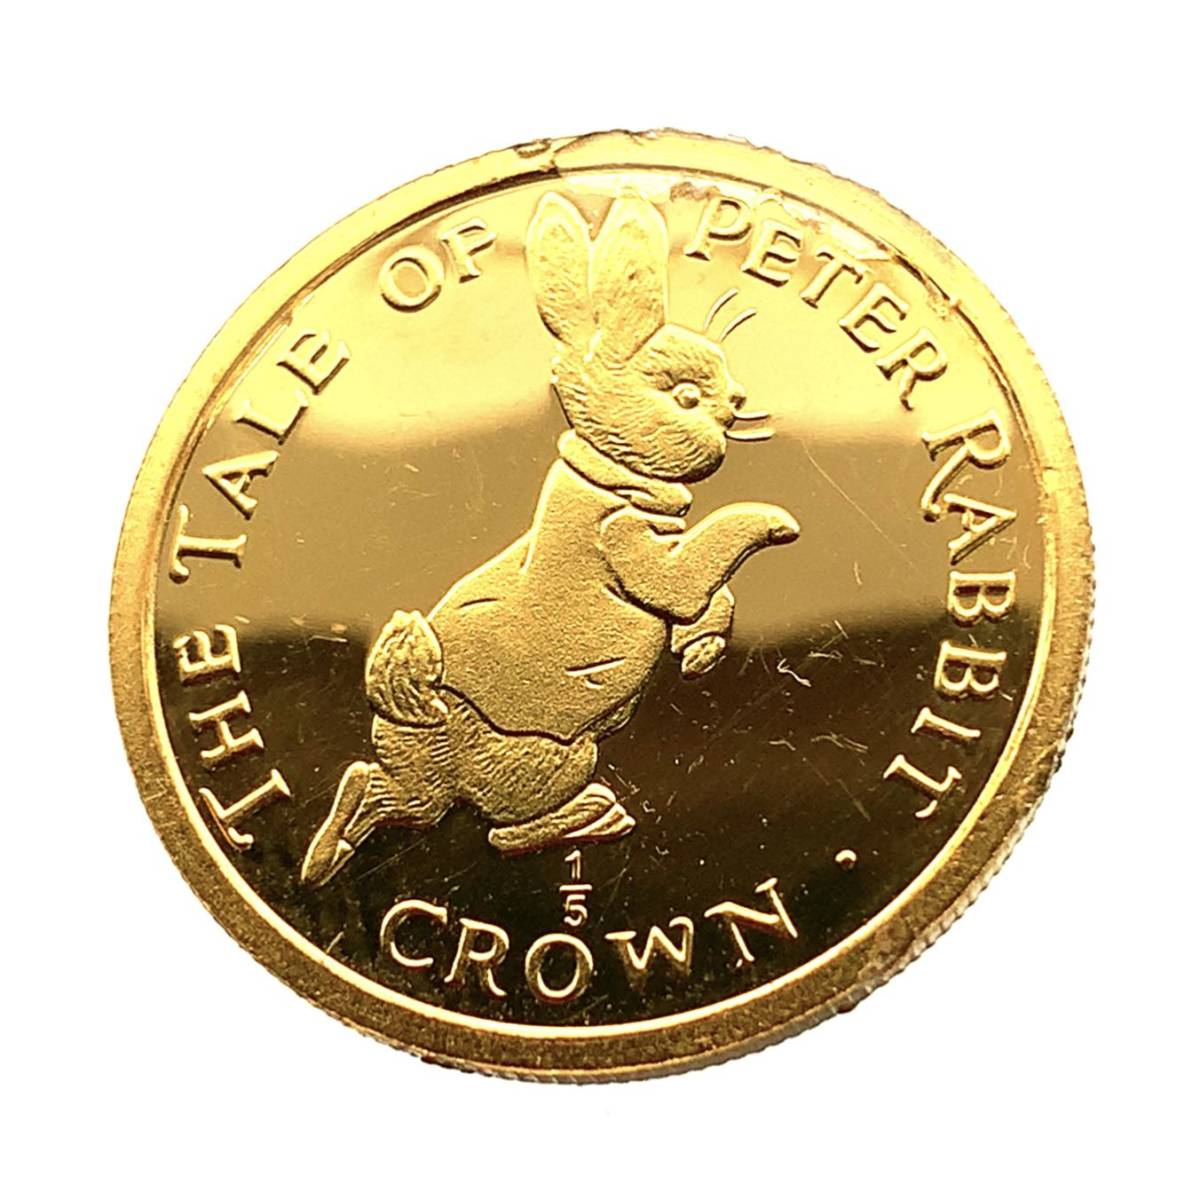  ピーターラビット金貨 ジブラルタル エリザベス女王 1/5オンス 1995年 6.2g 24金 純金 イエローゴールド コレクション Gold _画像1